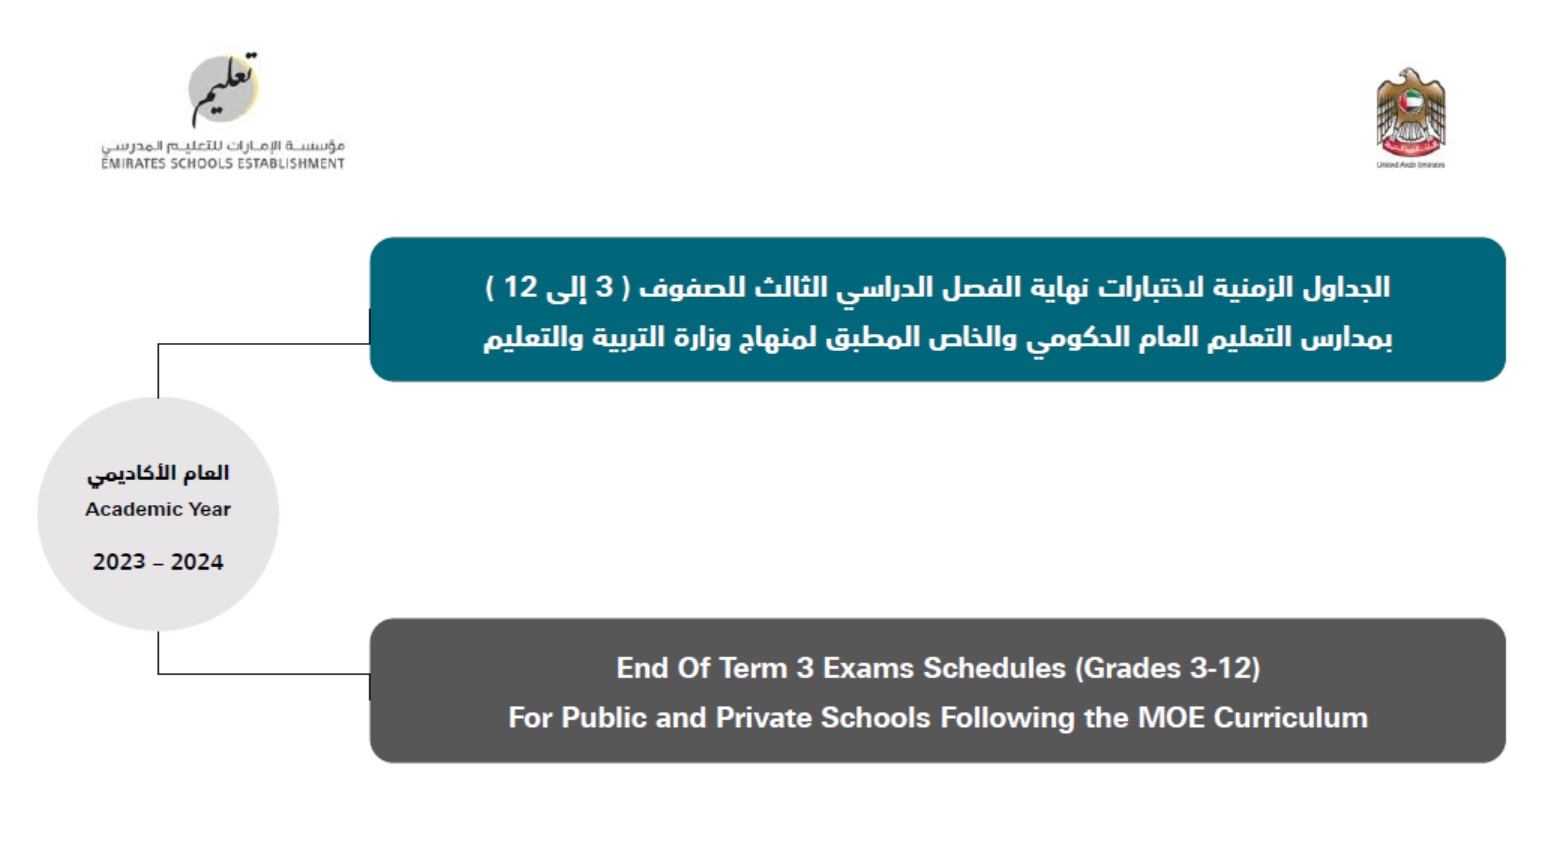 الجداول الزمنية لاختبارات نهاية الفصل الدراسي 2023-2024 الثالث الصف الثالث إلى الصف الثاني عشر 